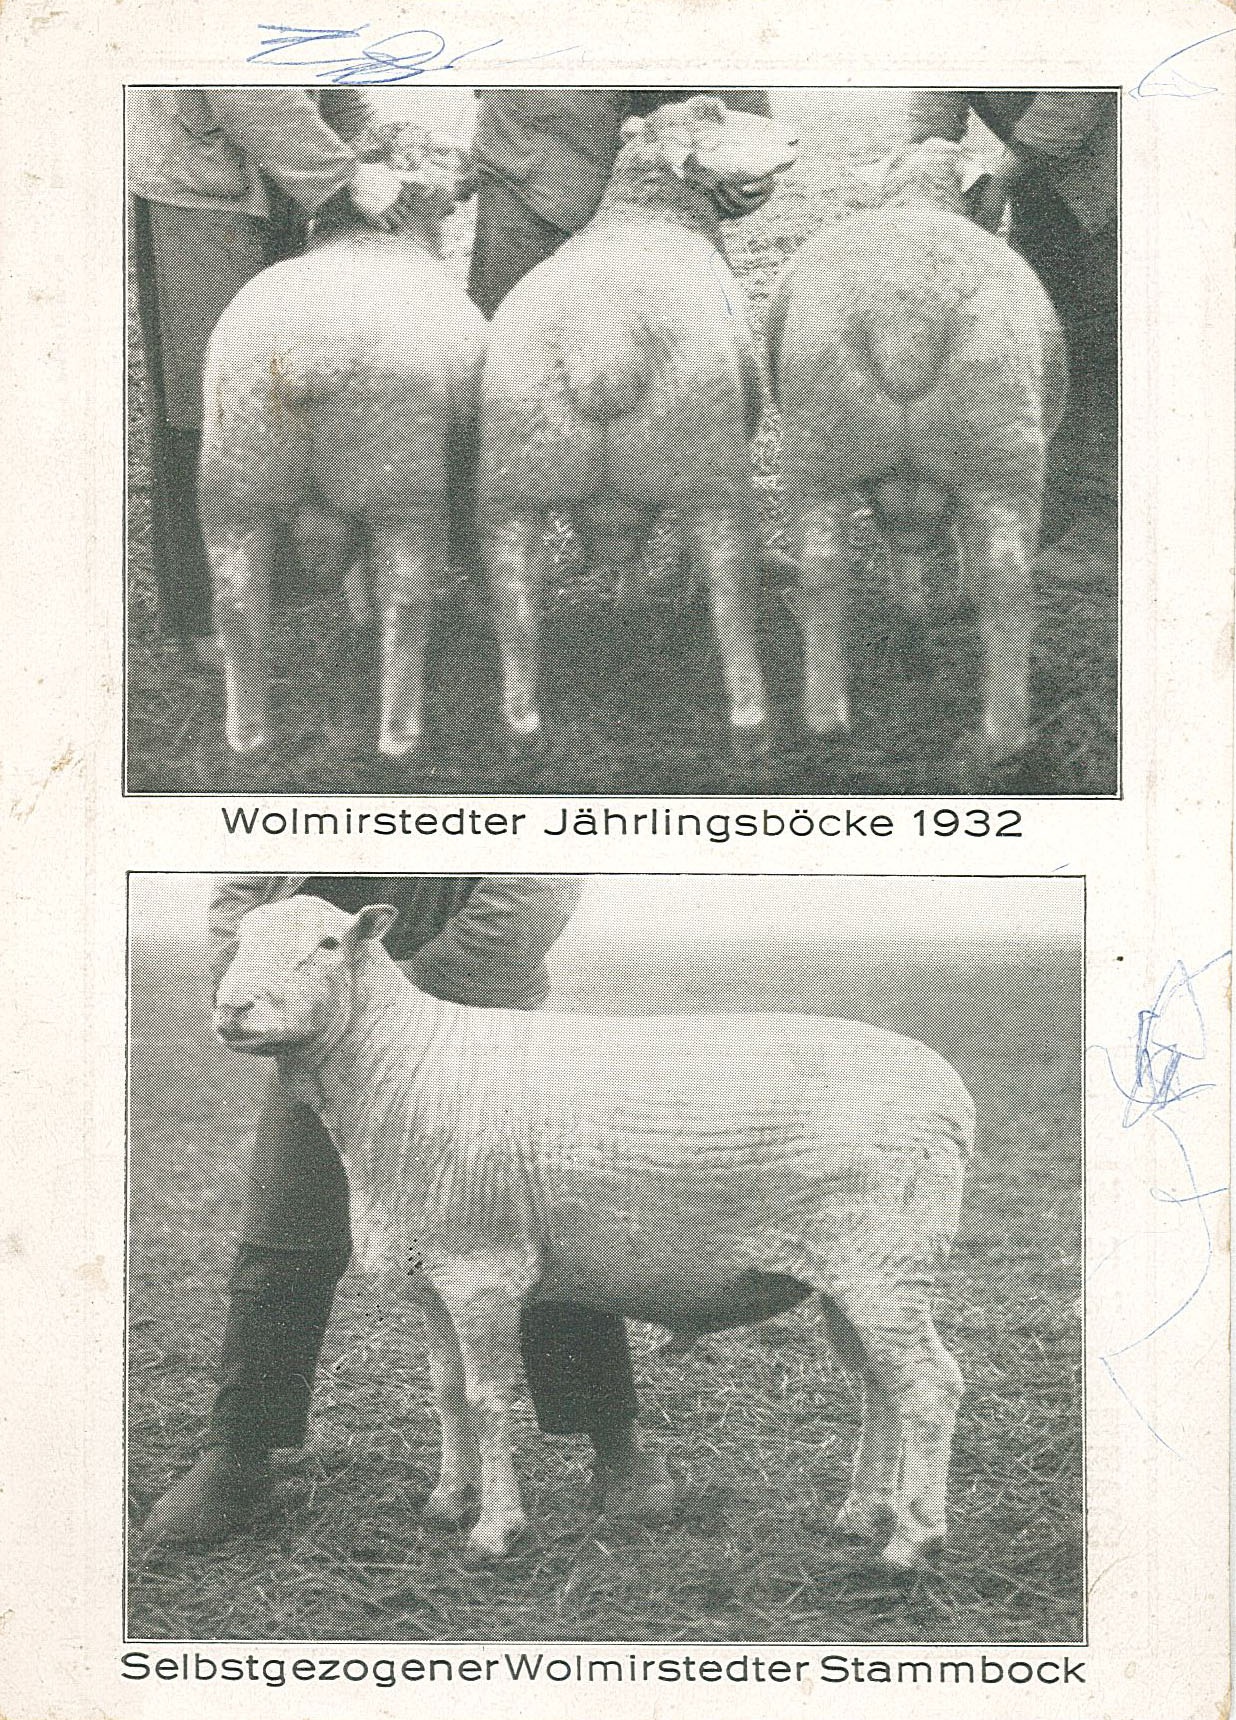 Postkarte "Wolmirstedter Jährlingsböcke 1932 / Selbstgezogener Wolmirstedter Stammbock" (Museum Wolmirstedt RR-F)